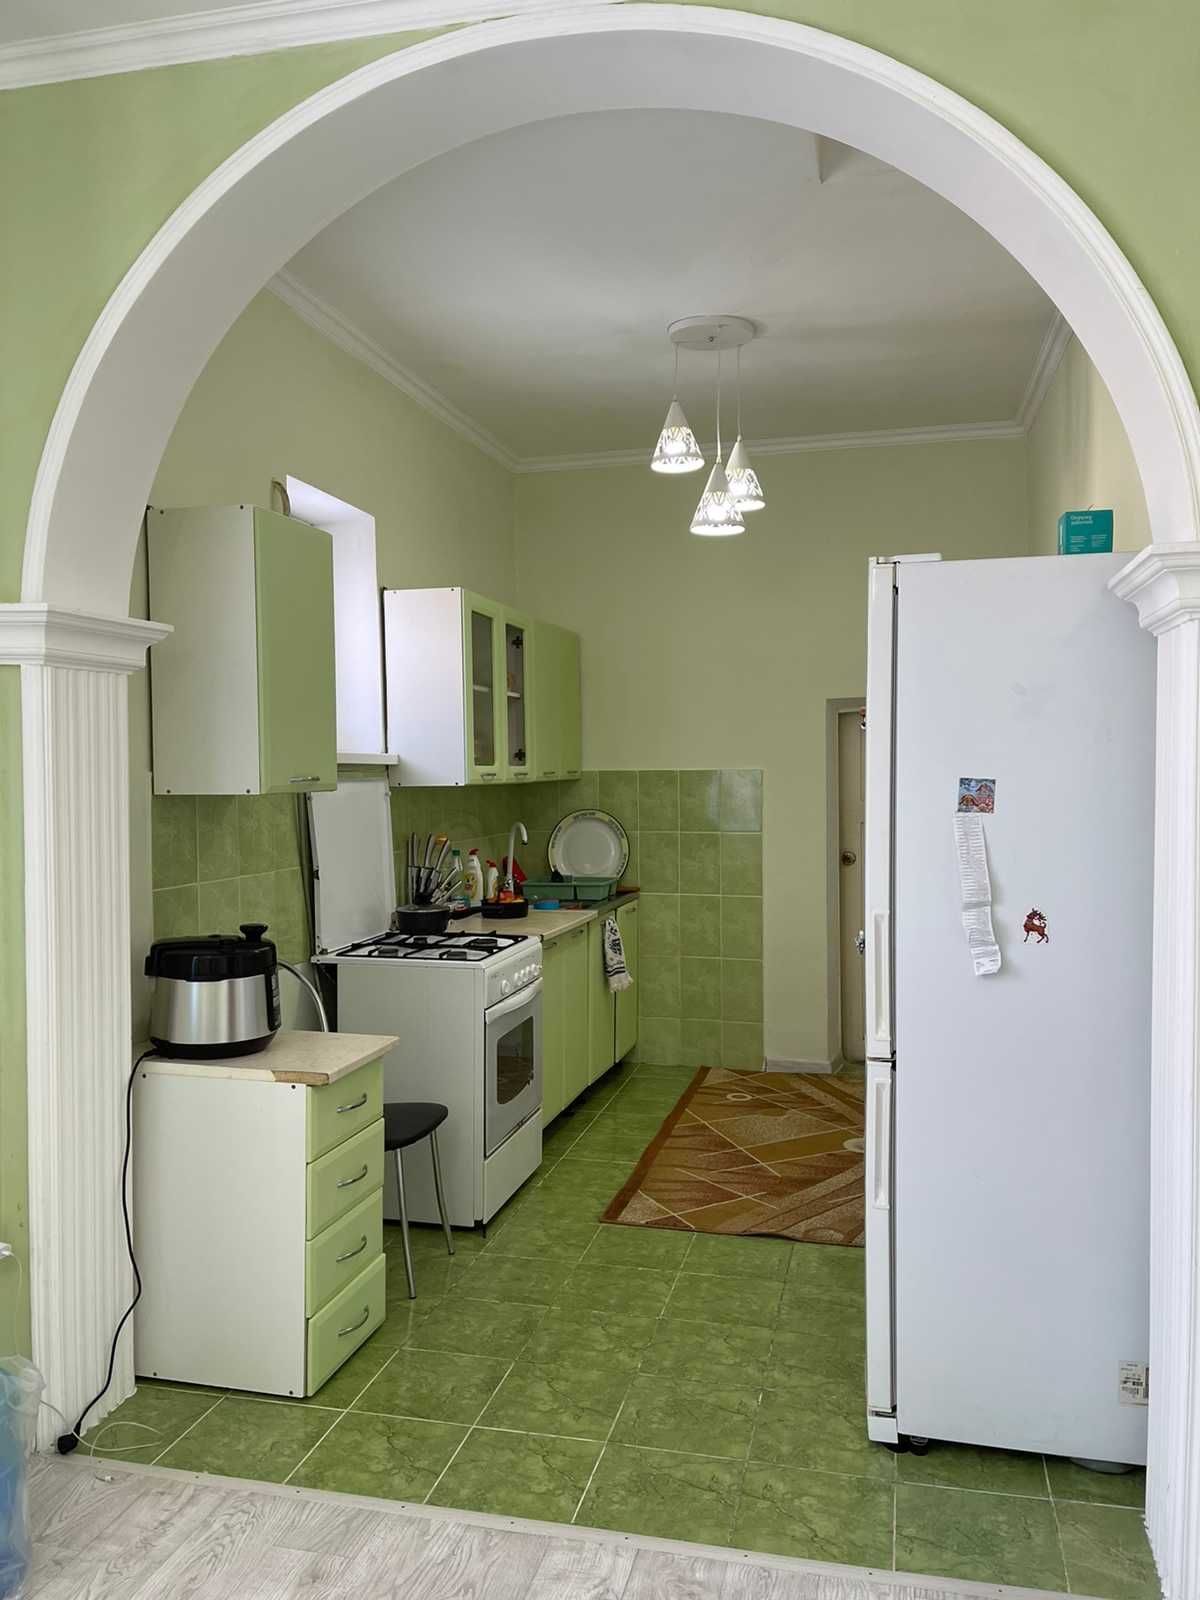 Продается дом в Балыкшии  по ул байжигитова